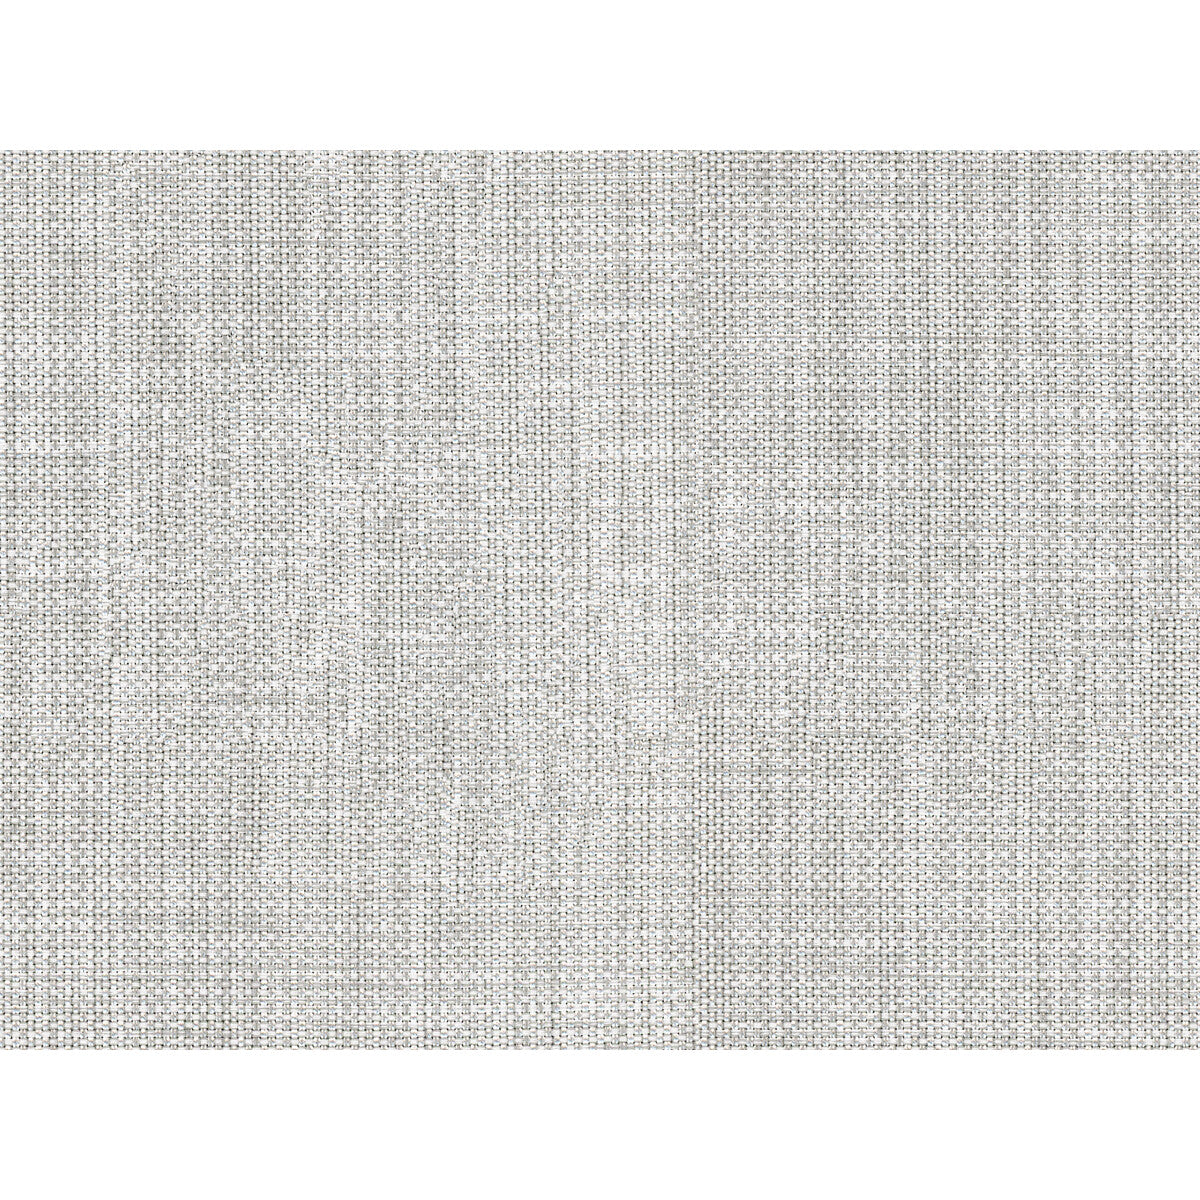 Kravet Basics fabric in 34481-11 color - pattern 34481.11.0 - by Kravet Basics